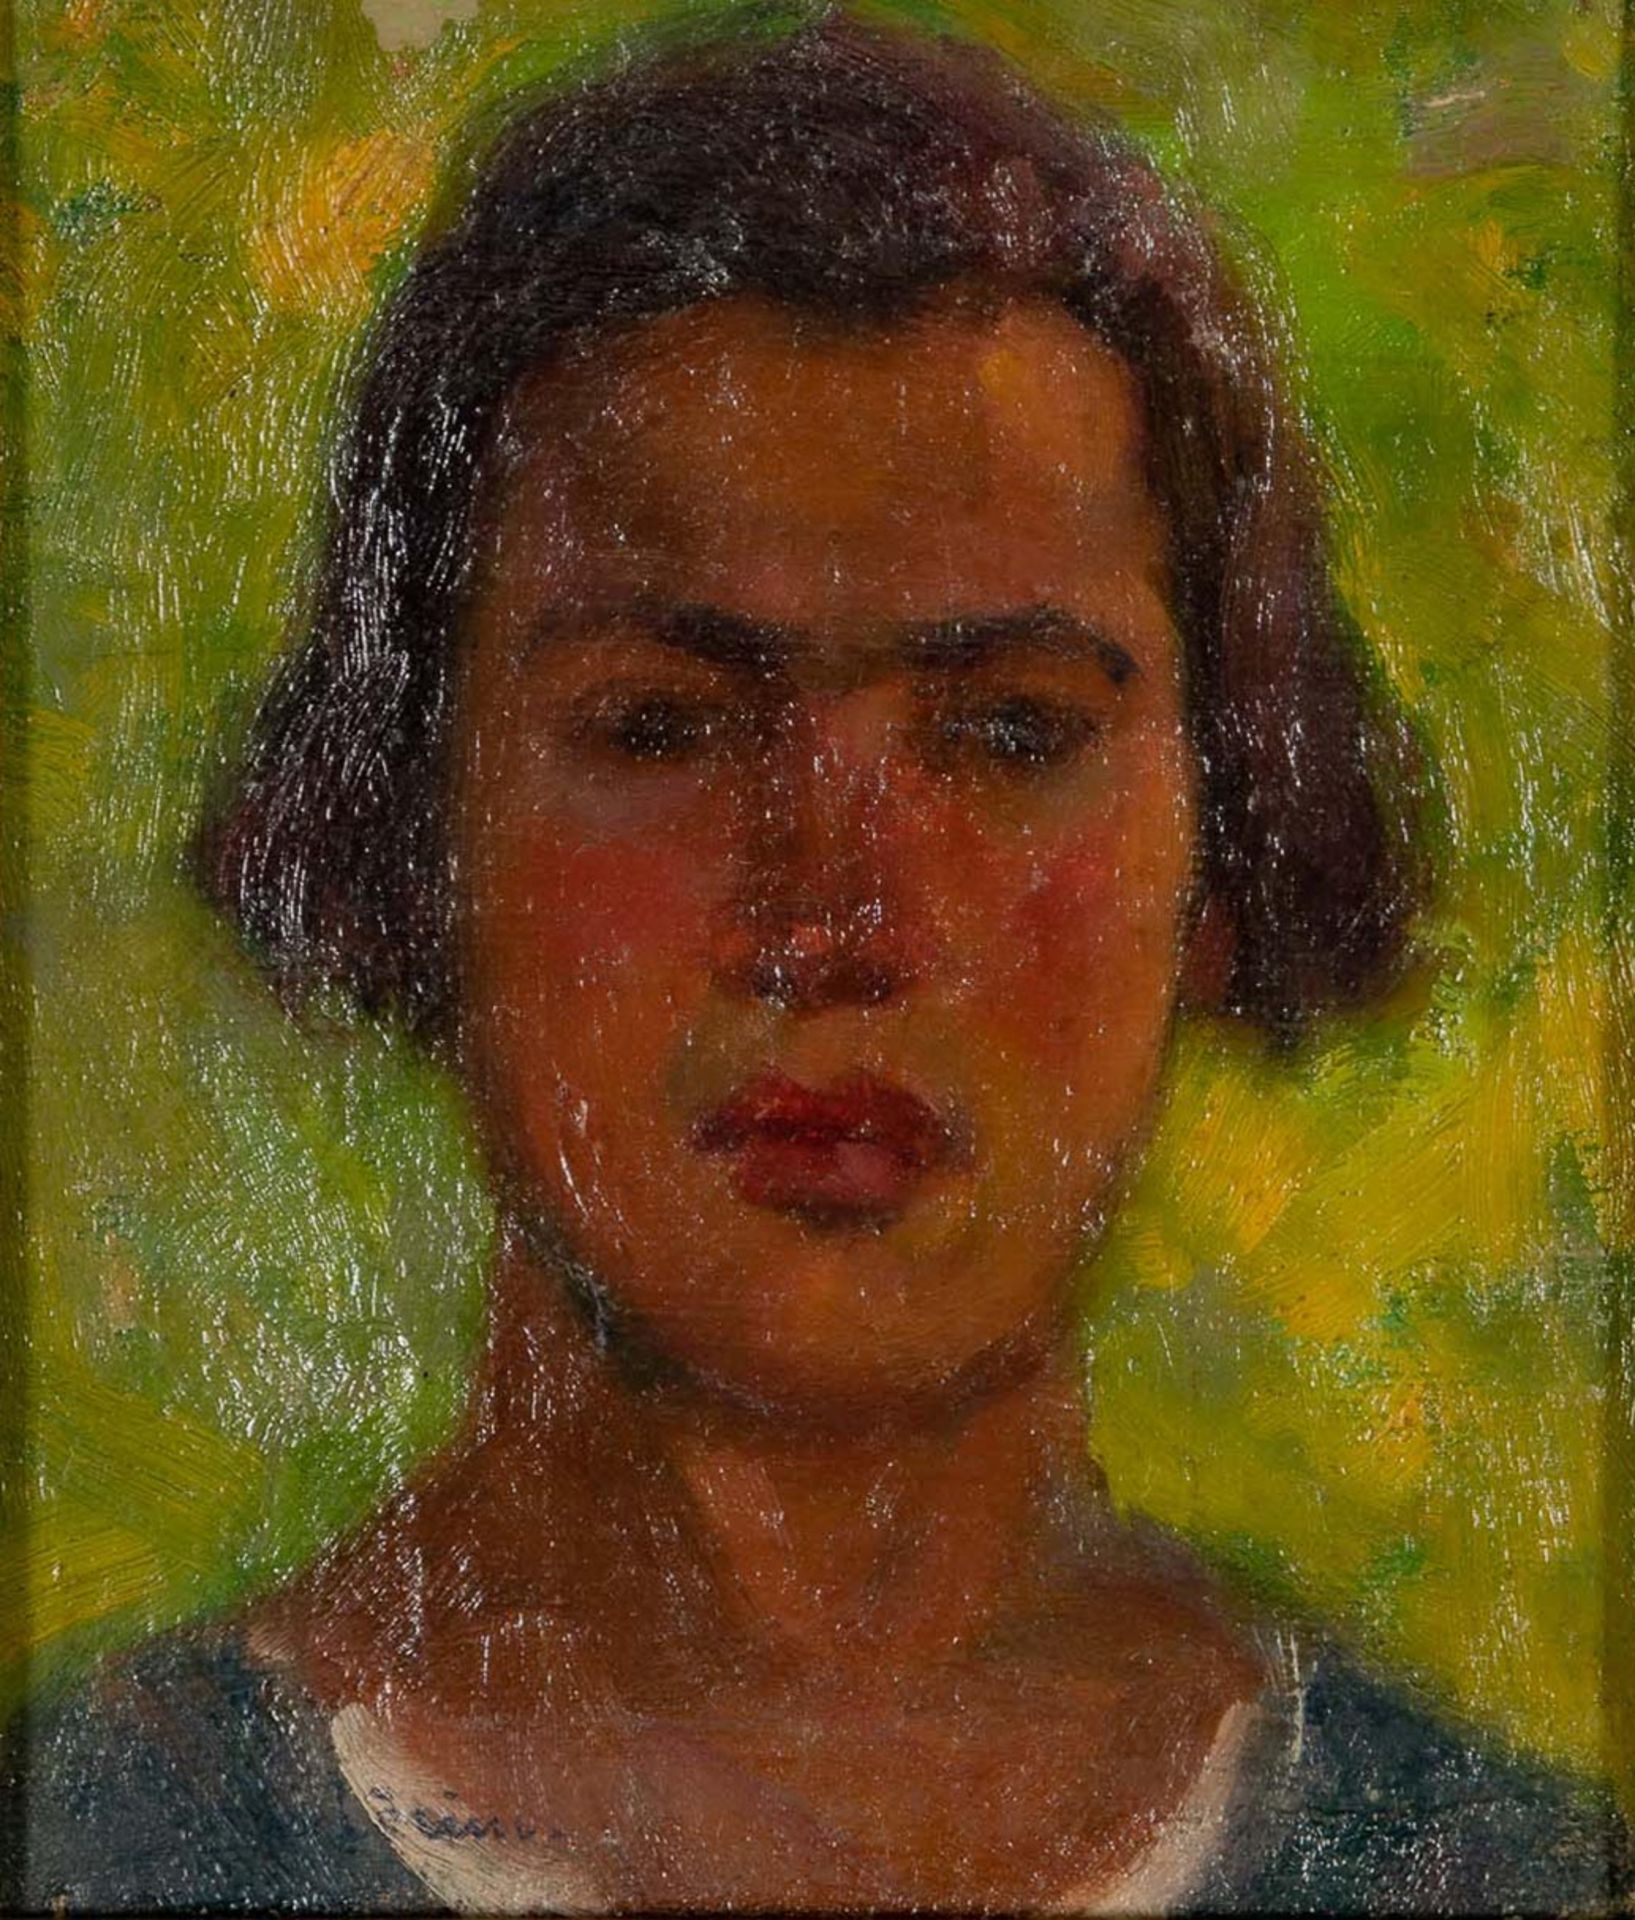 "Porträt", Kopfporträt eines jungen Mannes vor grünlich- gelbem Hintergrund; kleinformatiges Gemäld - Bild 2 aus 6